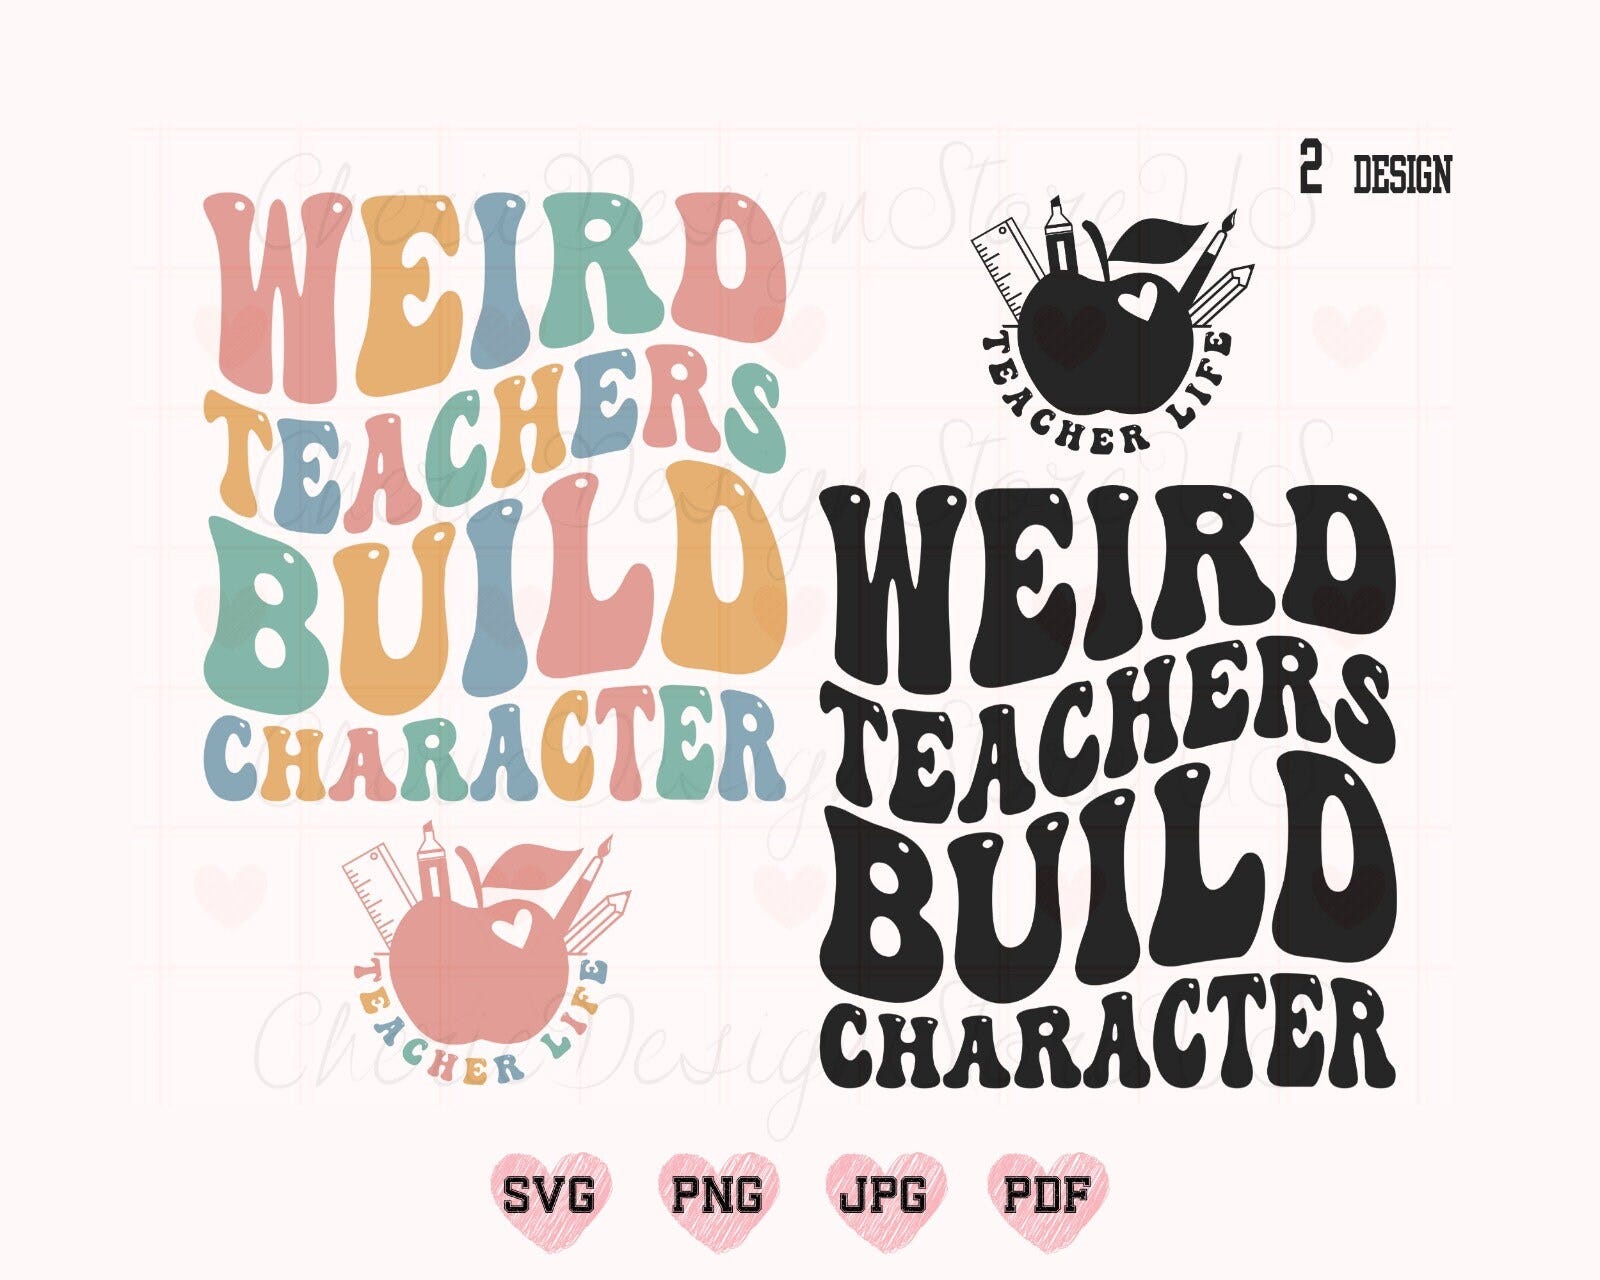 Weird Teachers Build Character Svg Png, Teacher Svg, Funny Teacher Svg, Funny Teacher Shirt Svg, Teacher Life Svg, Weird Teacher Svg, Teach